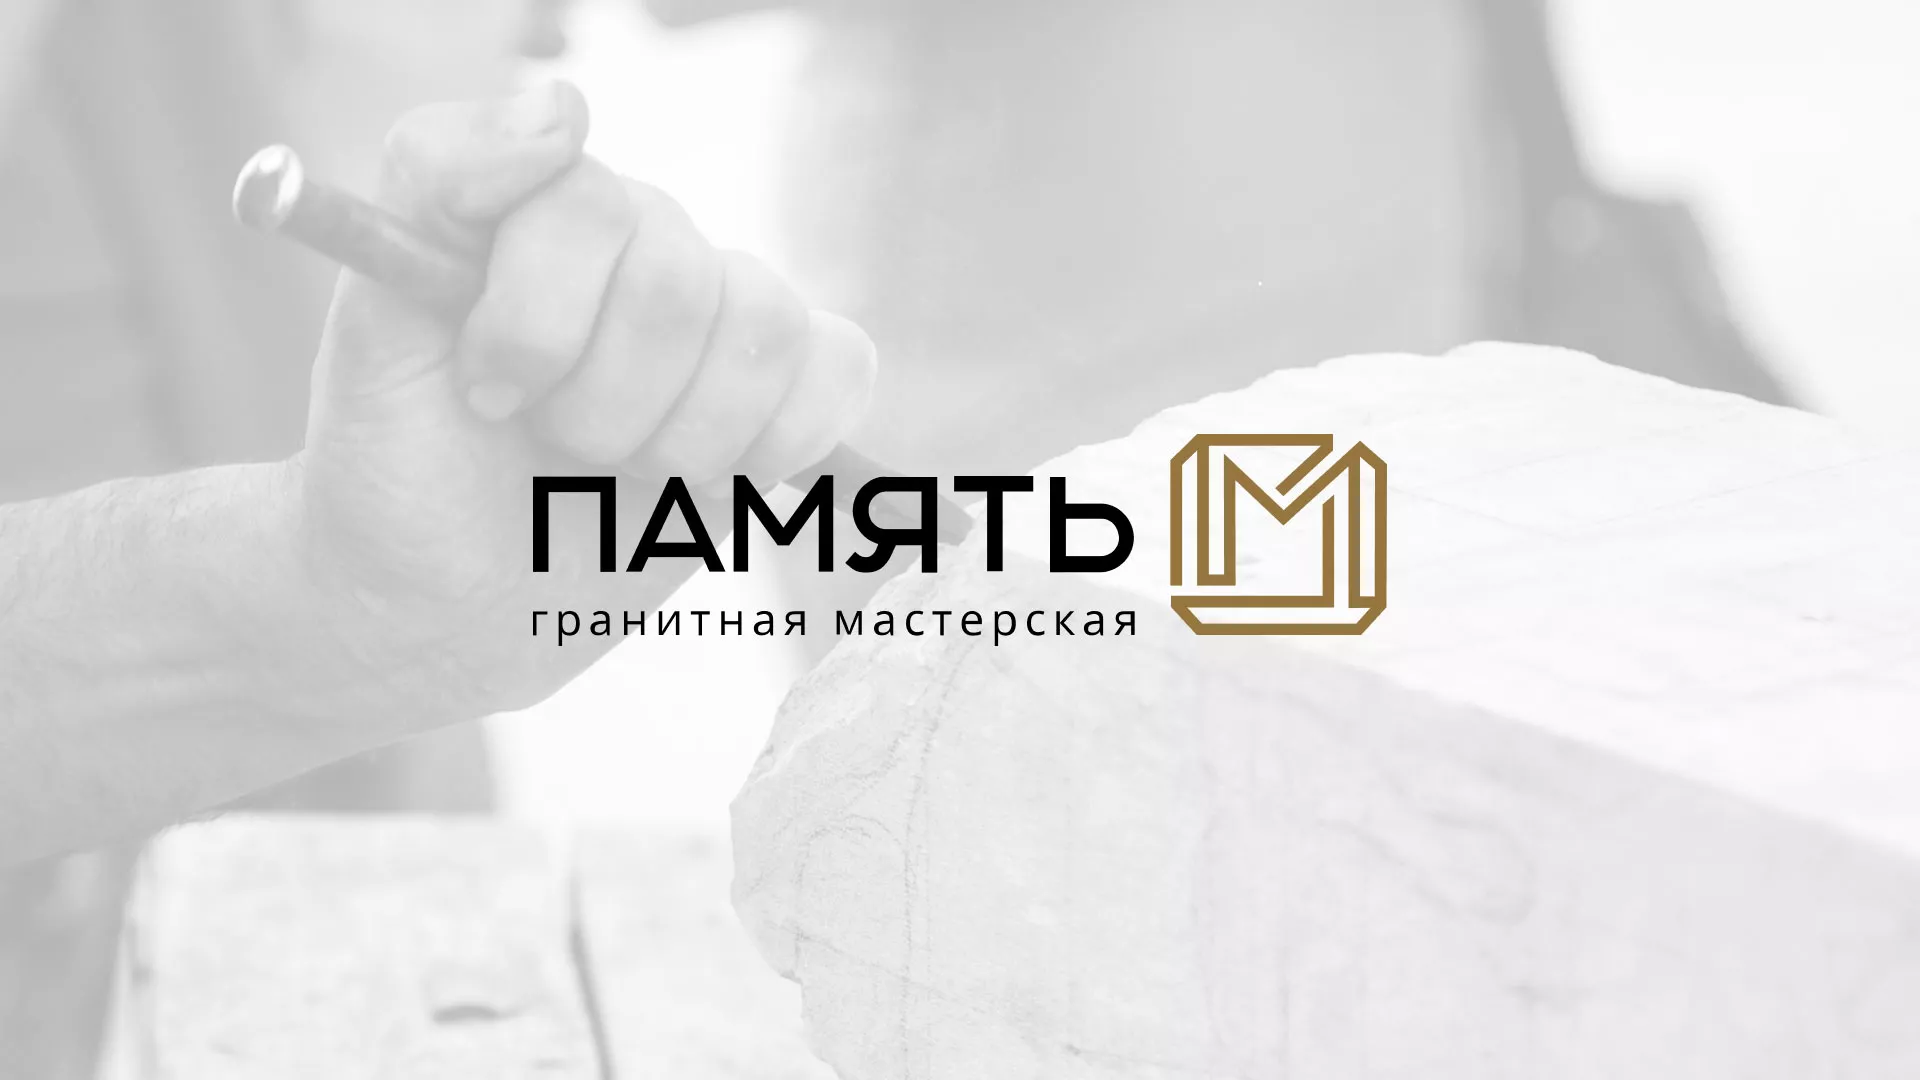 Разработка логотипа и сайта компании «Память-М» в Зернограде